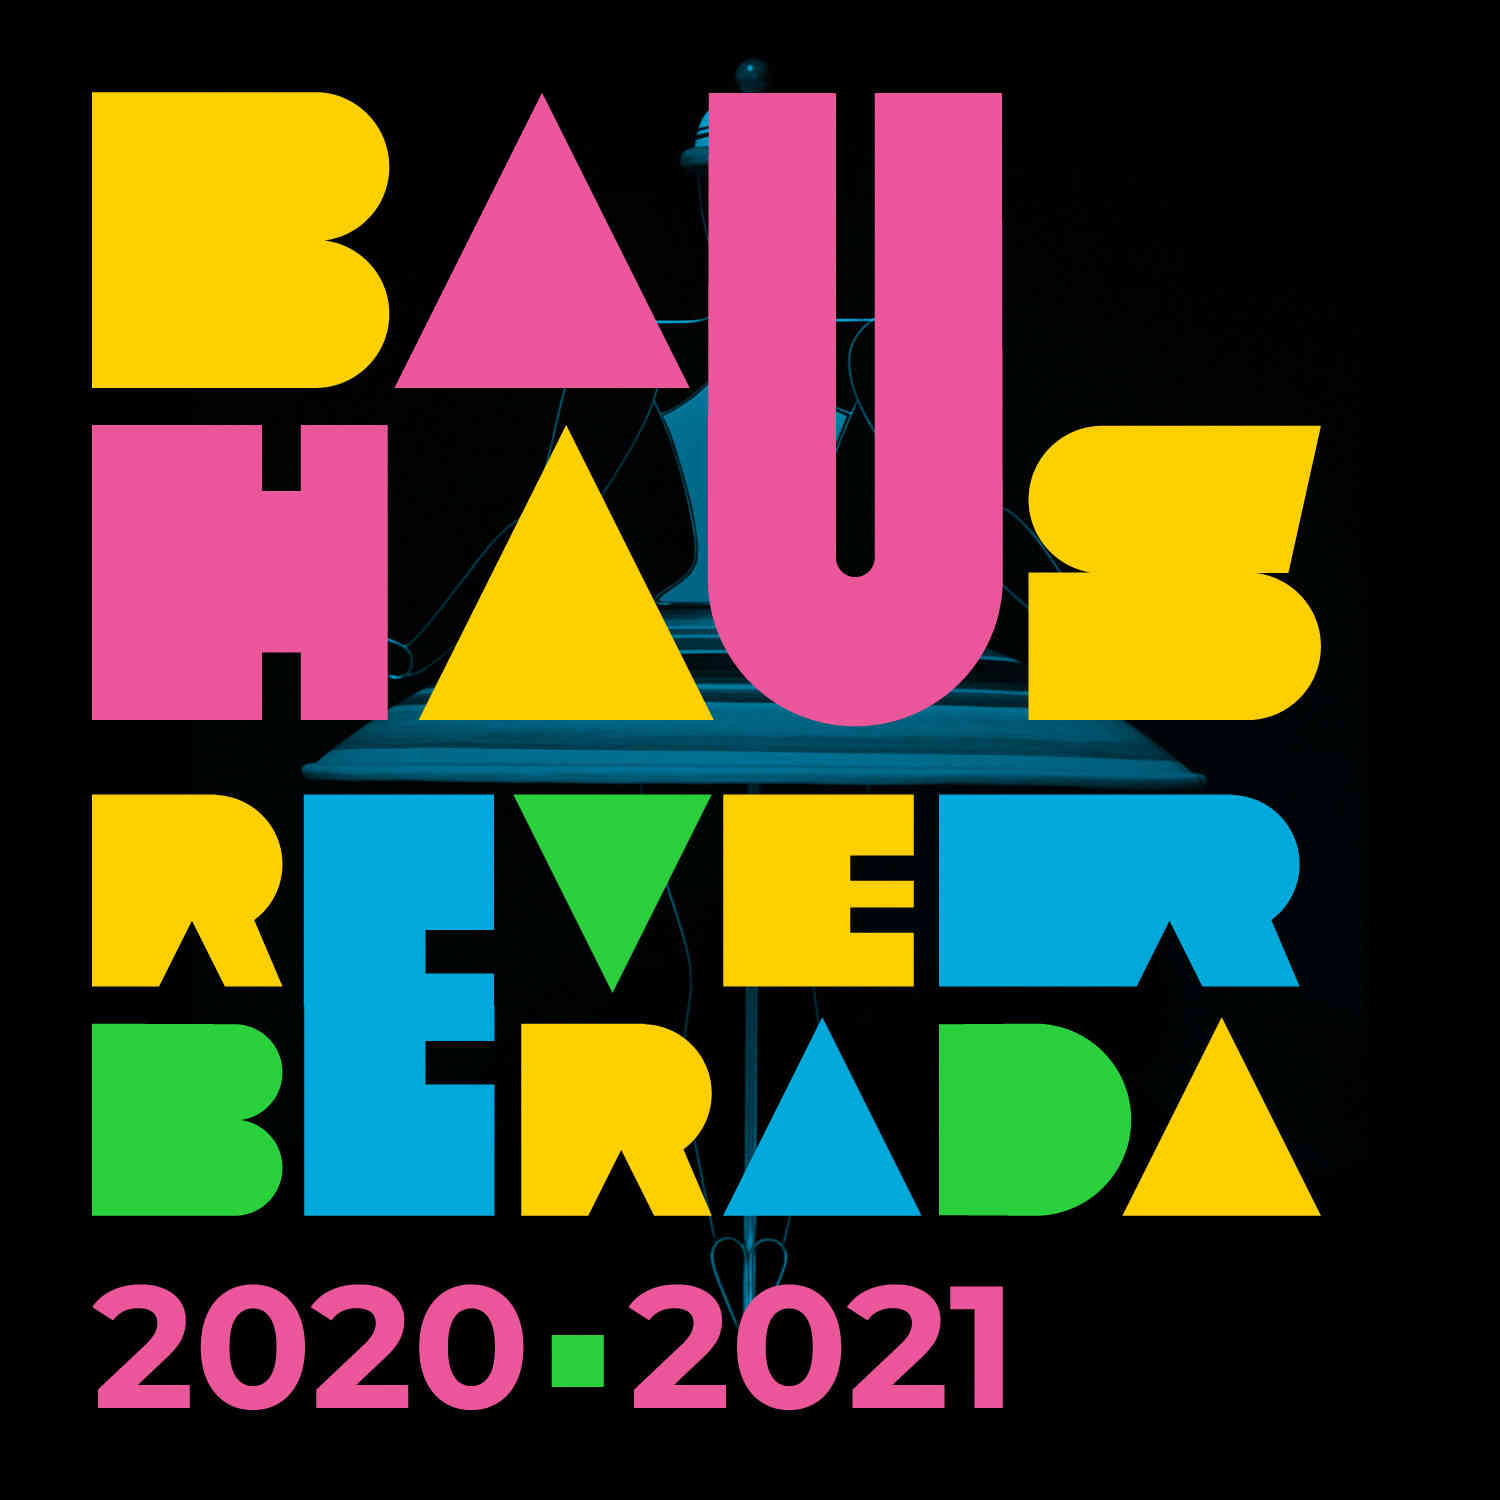 Bauhaus Reverberada